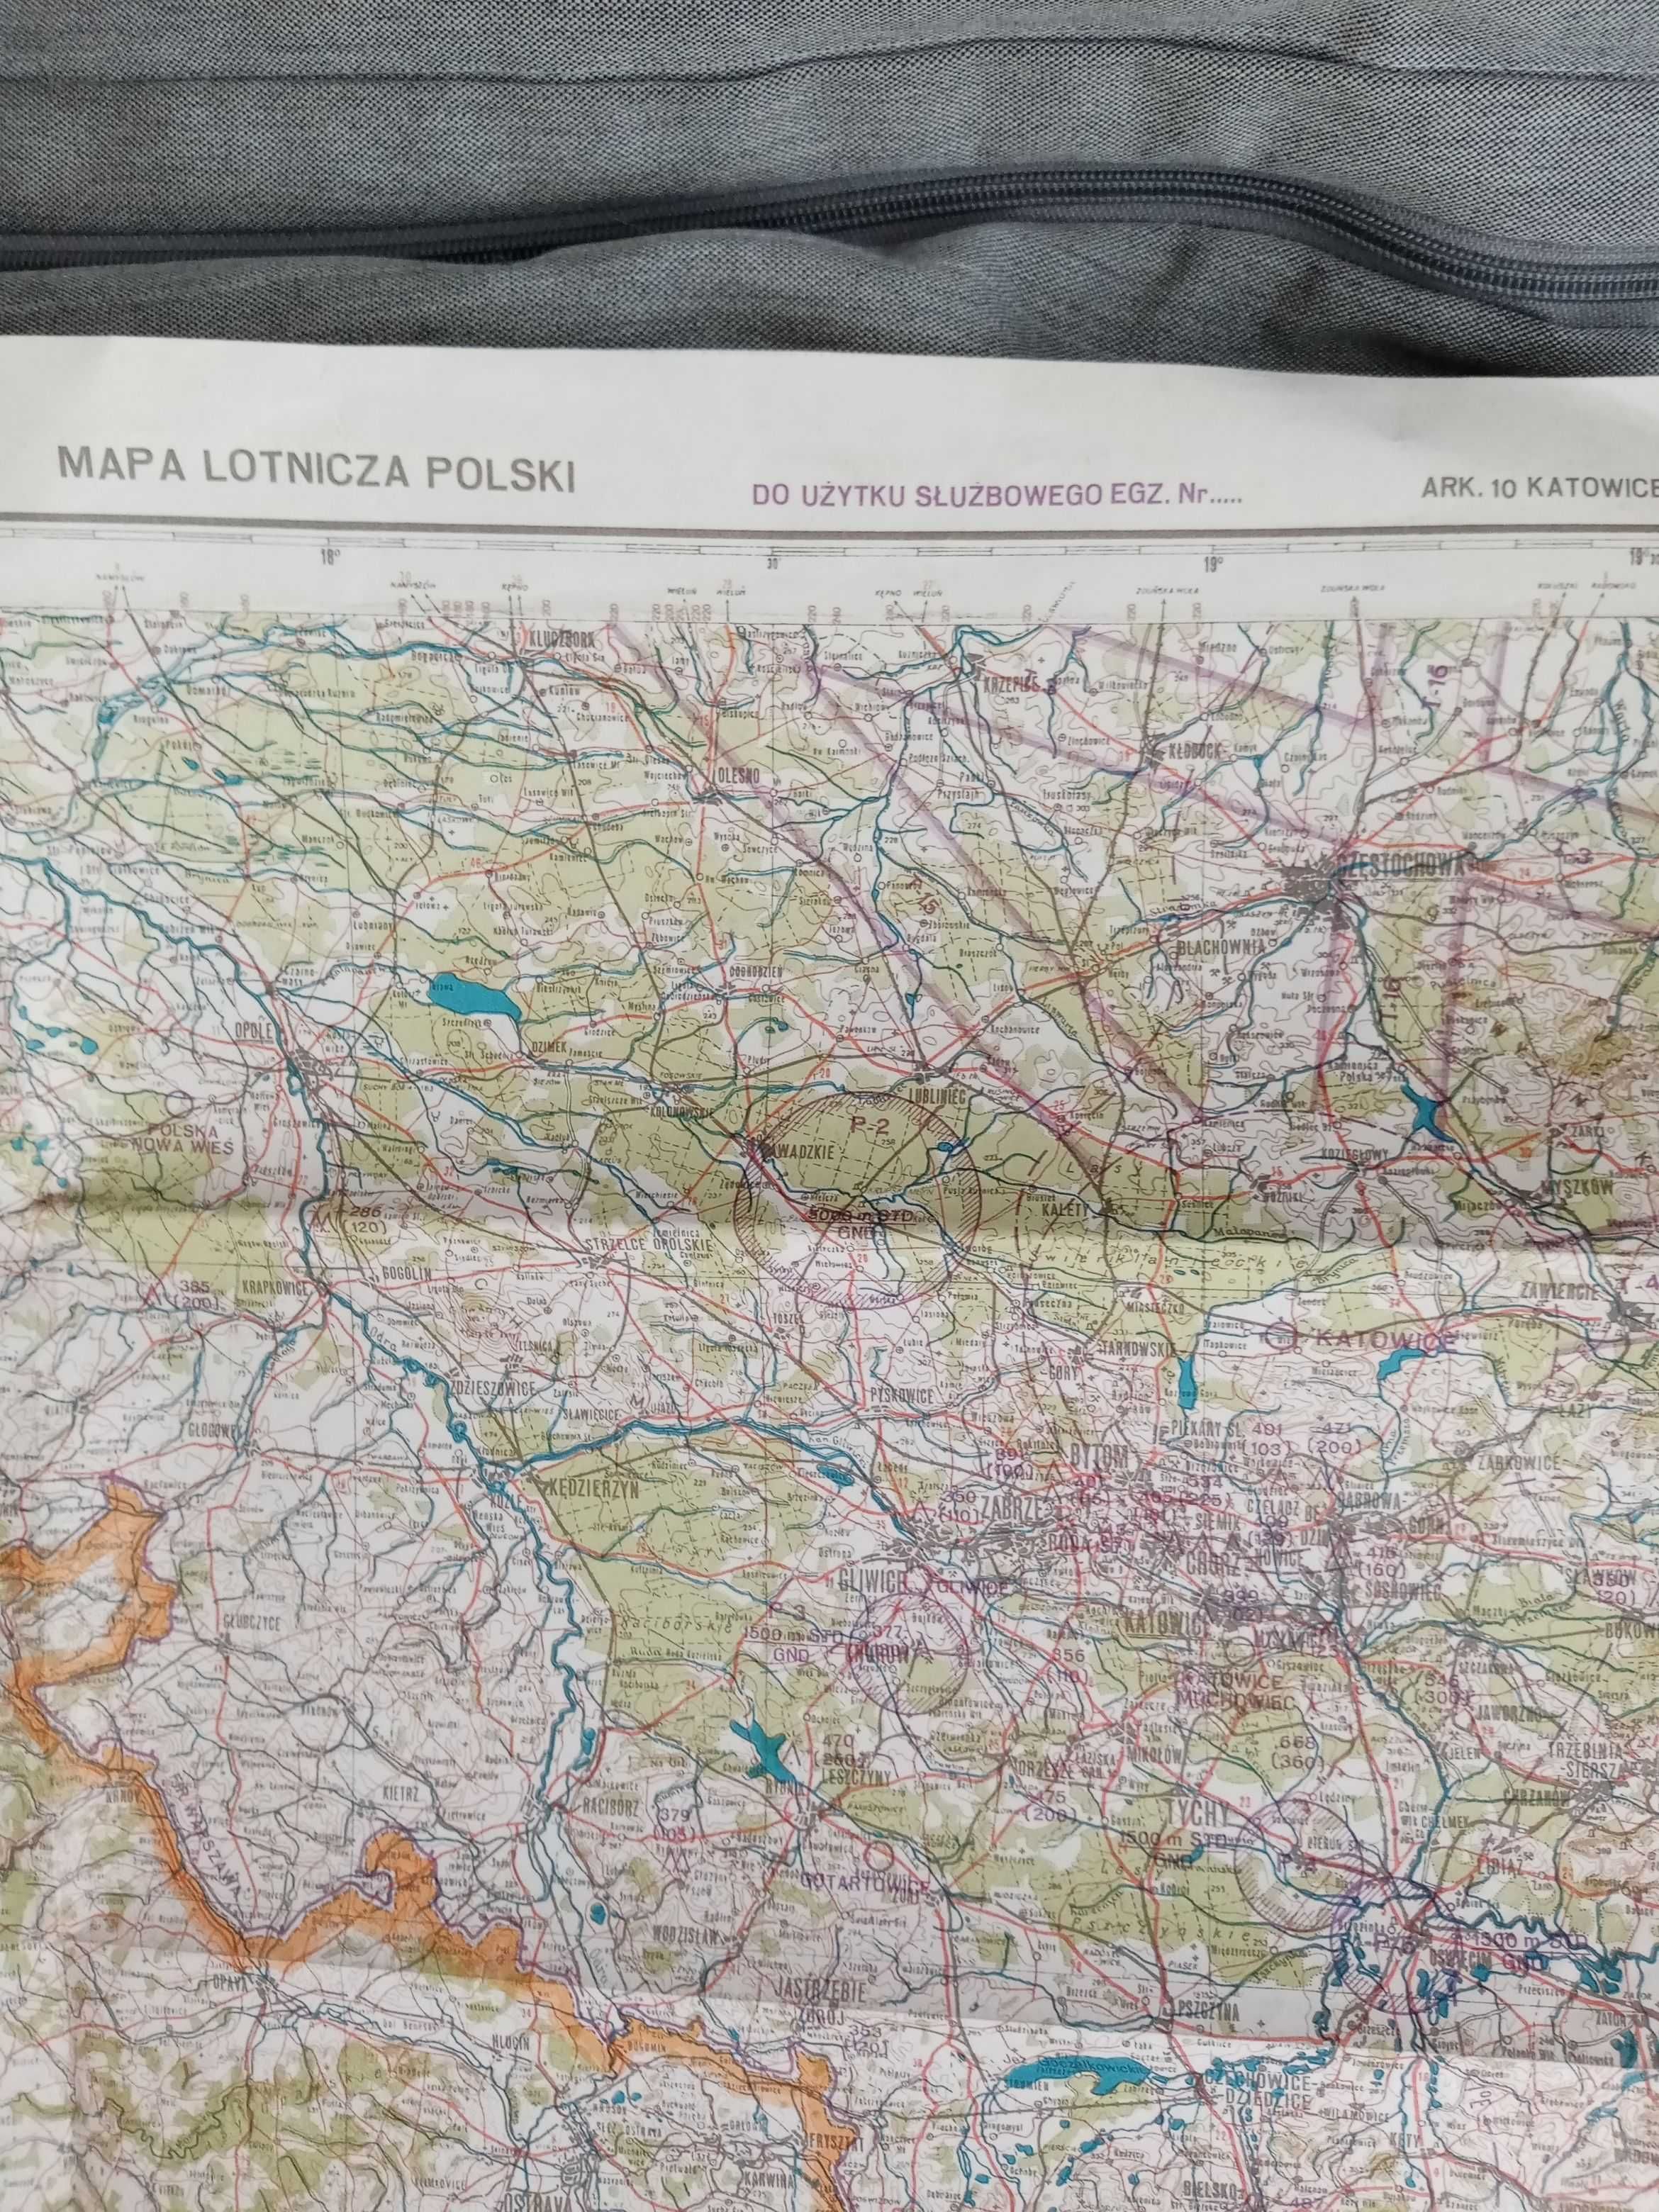 stara mapa lotnicza Polski - arkusz Katowice - 1977 r.